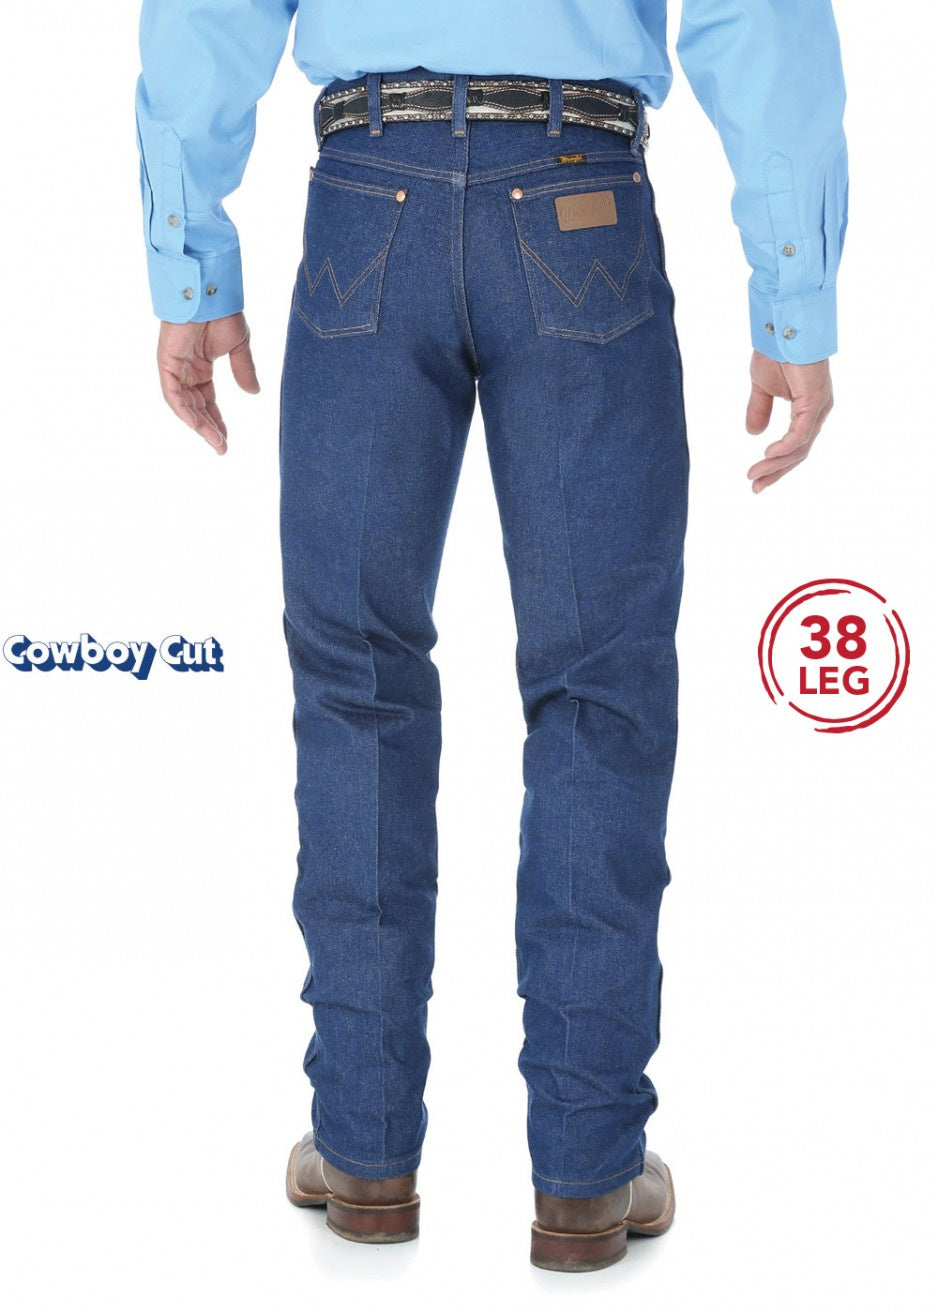 Mens Wrangler Cowboy Cut Original Fit 38 Leg Jean (3759652995149)